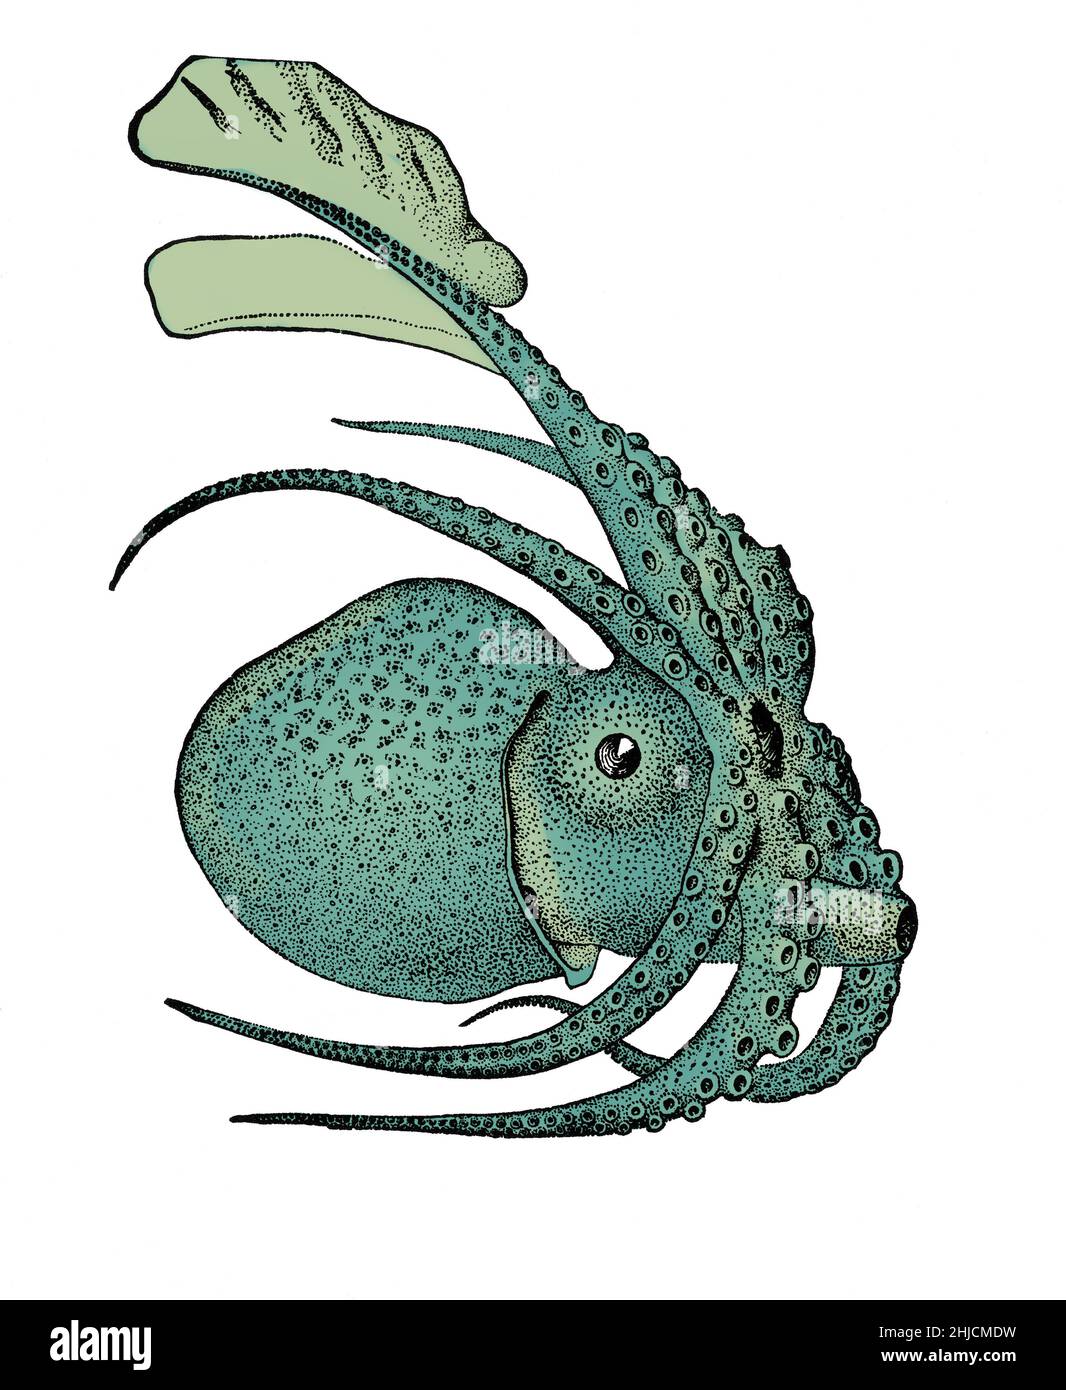 Argonauta argo, noto anche come argonauta maggiore, è una specie di polpo pelagico appartenente al genere Argonauta. Argonauta argo è cosmopolita e si trova in acque tropicali e subtropicali di tutto il mondo. Colore ottimizzato. Foto Stock